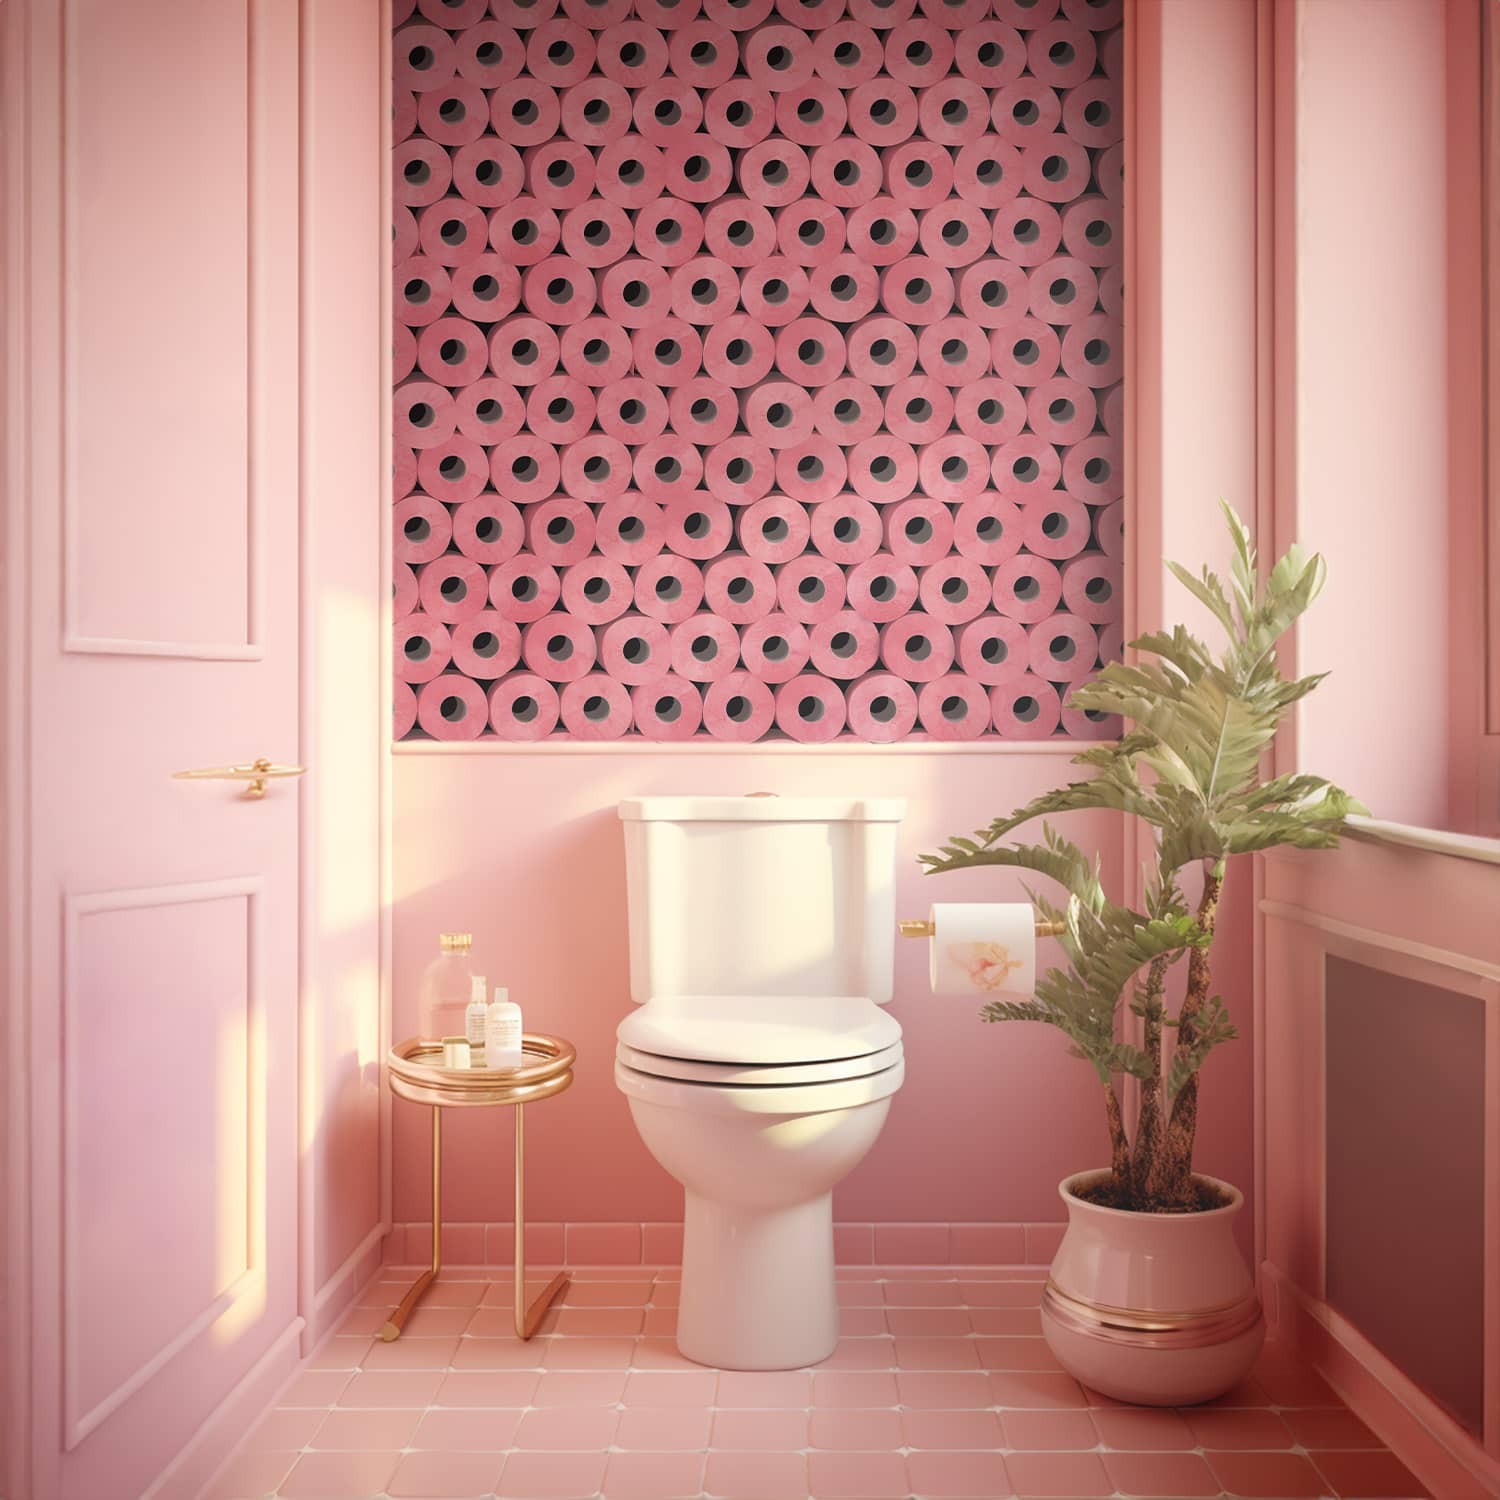 Déco toilettes : 47 idées et inspirations pour décorer ses WC